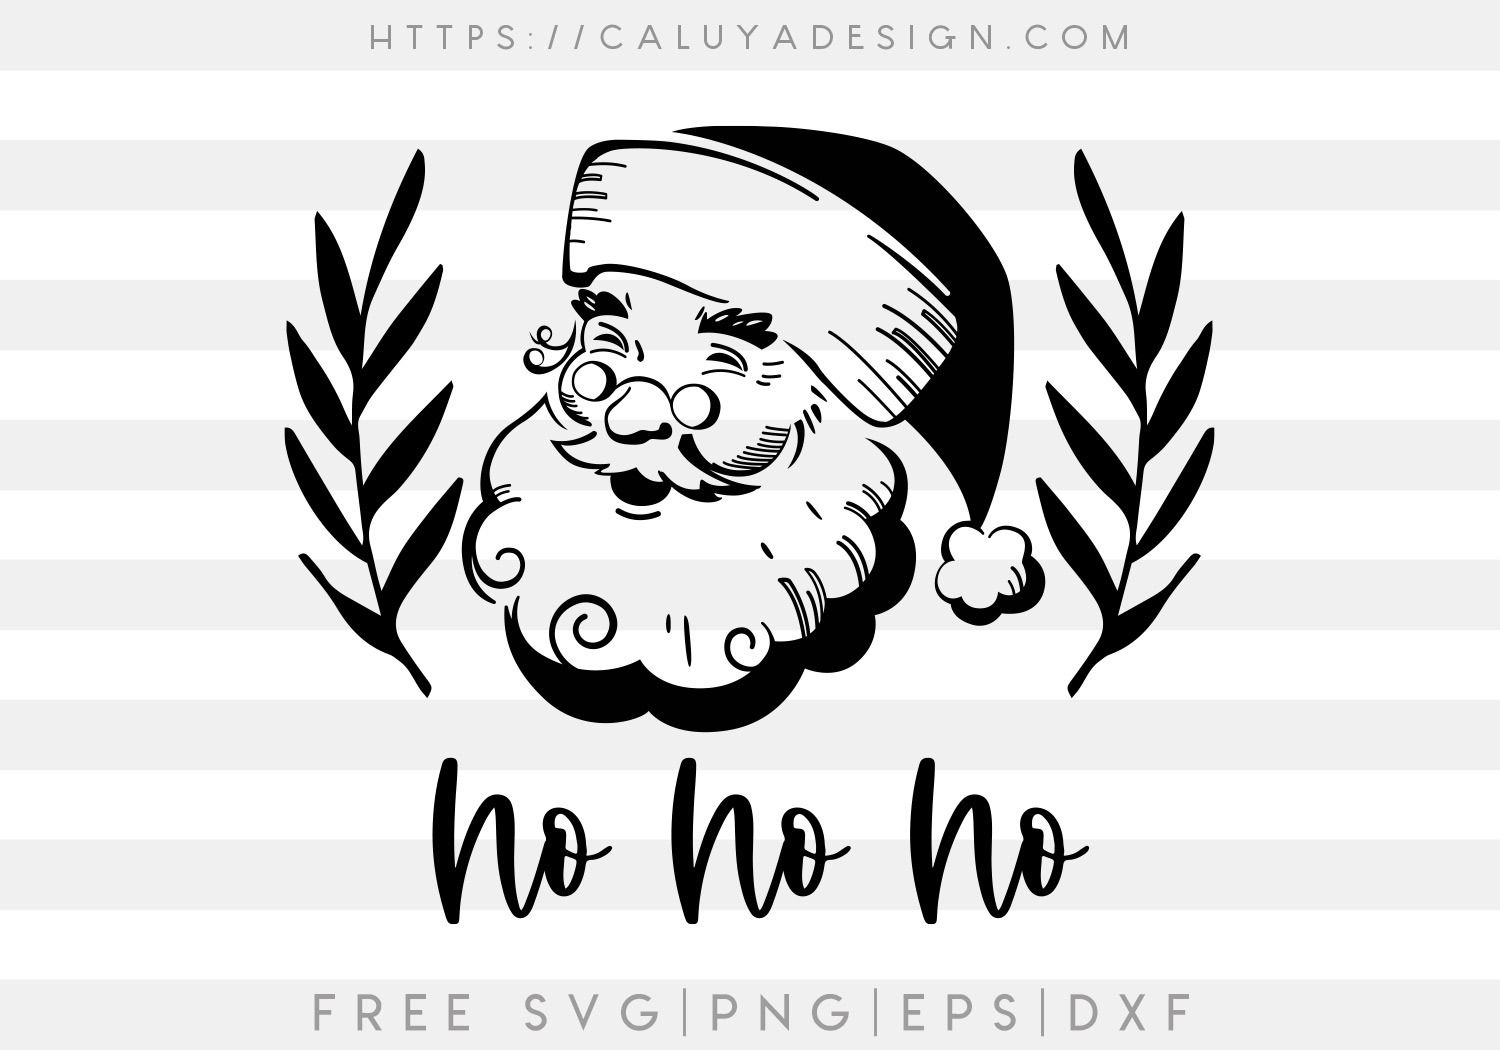 Free Hohoho Vintage Santa SVG Cut File